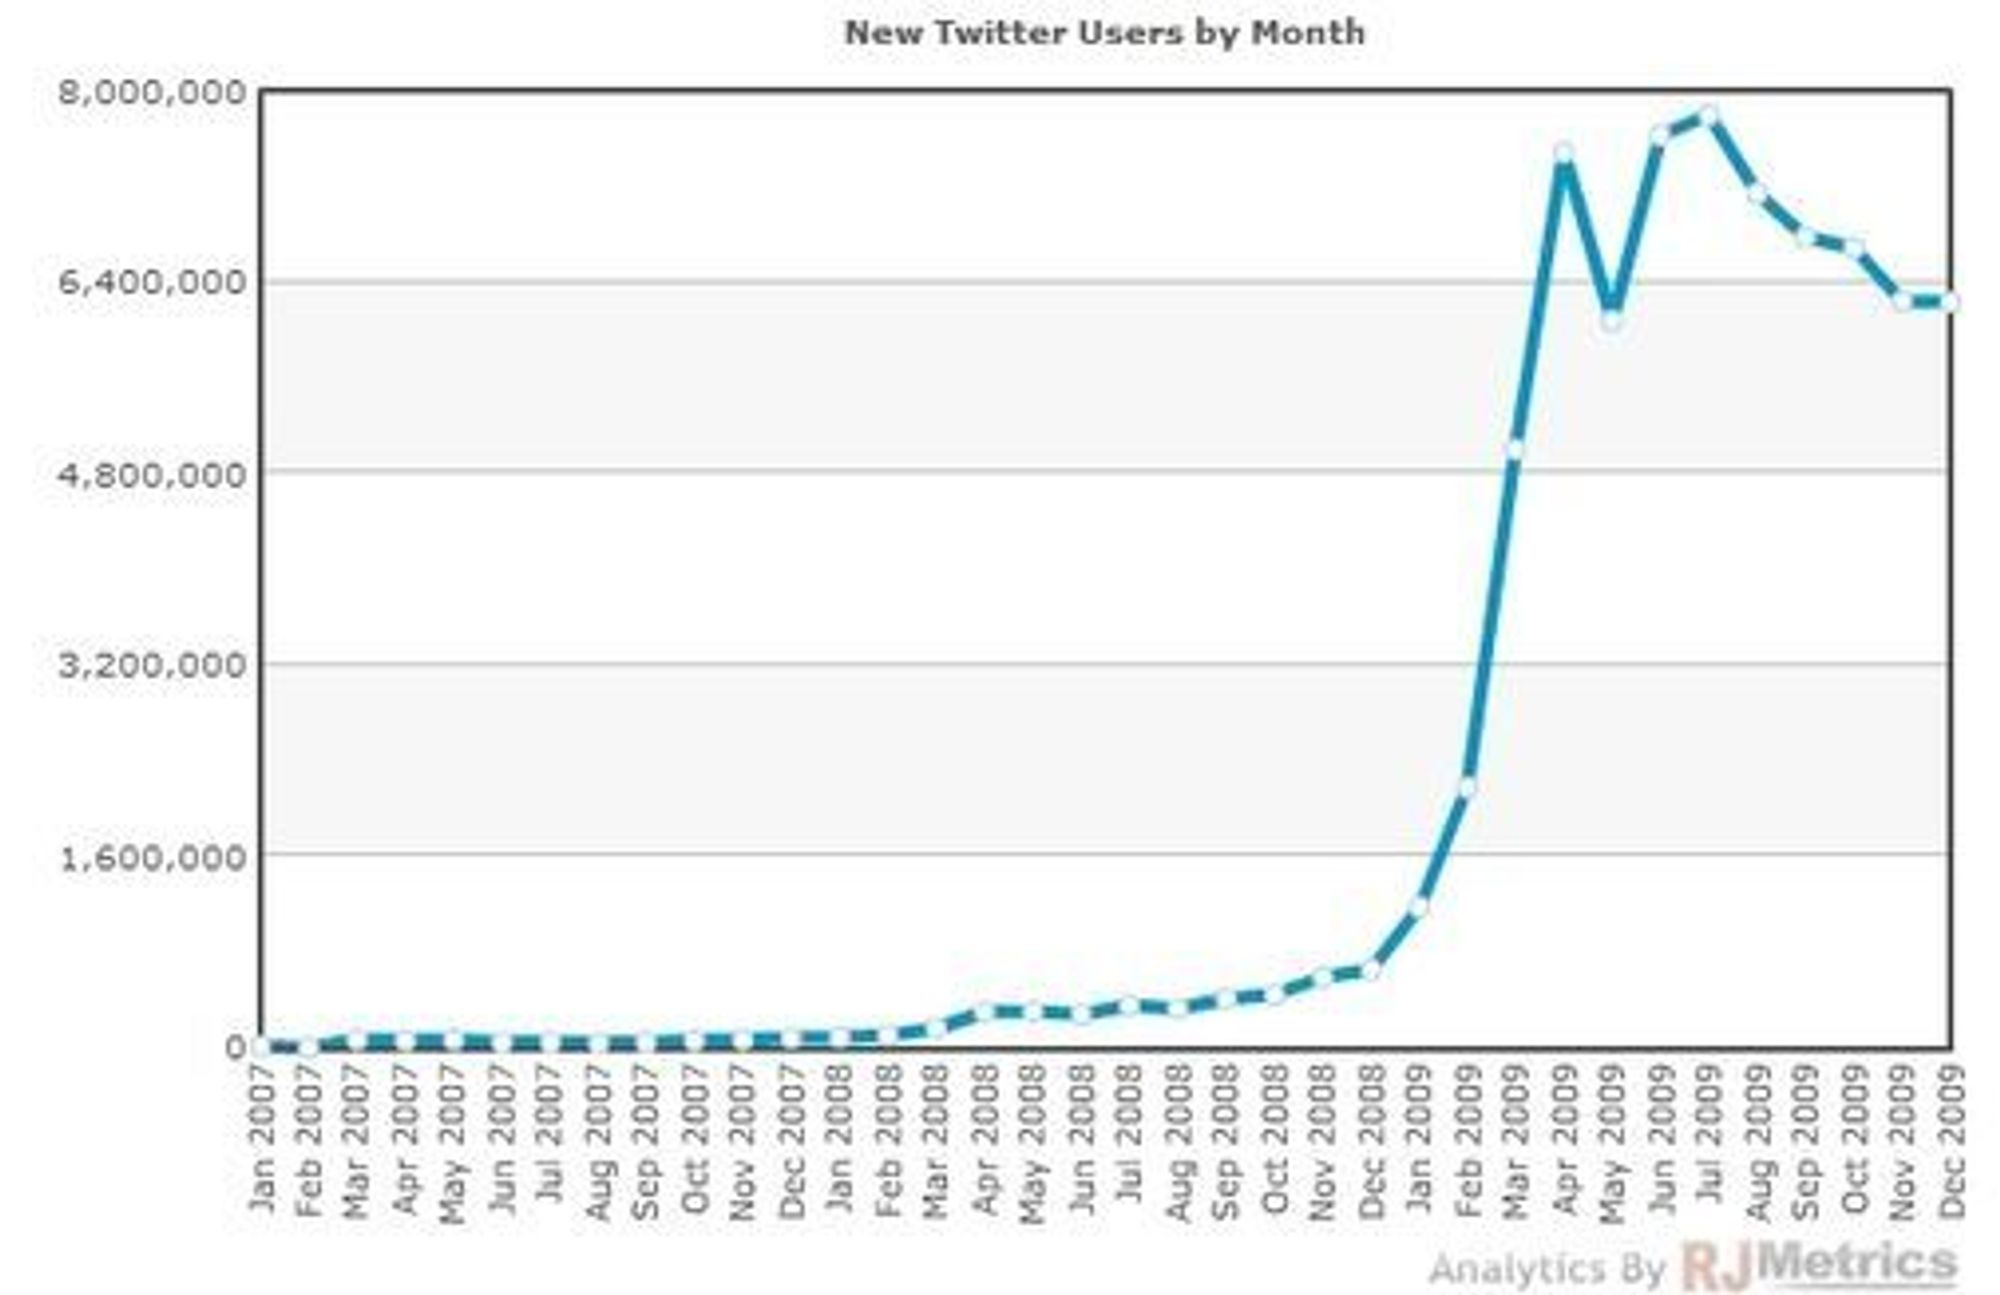 Nye brukere hver måned: Brukermassen til Twitter vokste enormt fra 2008-2009, men takten avtar nå dramatisk, ifølge tall fra RJMetrics.